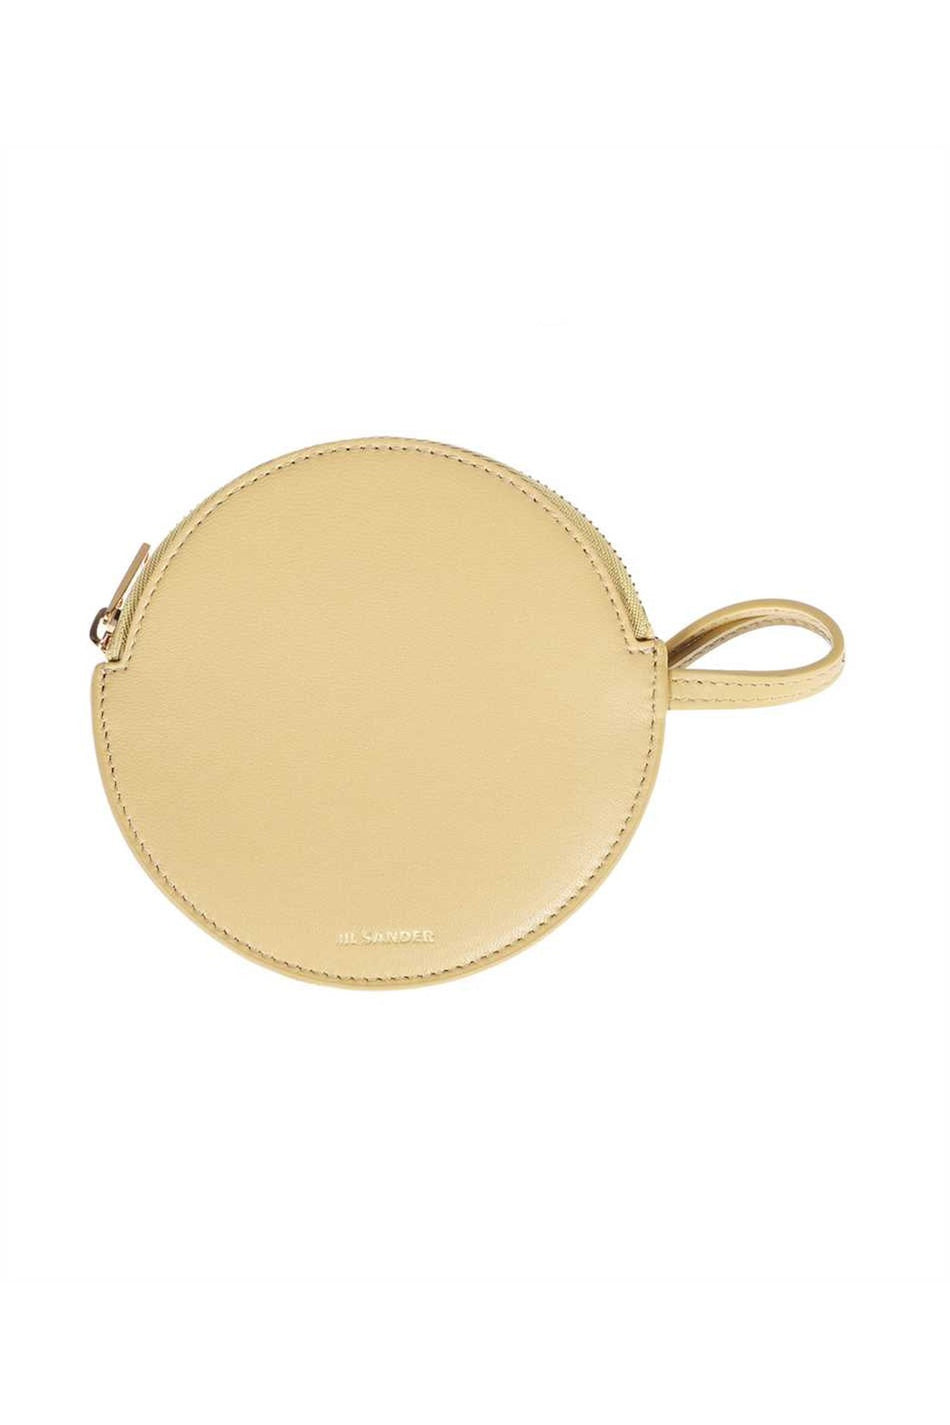 Leather coin purse-Jil Sander-OUTLET-SALE-TU-ARCHIVIST